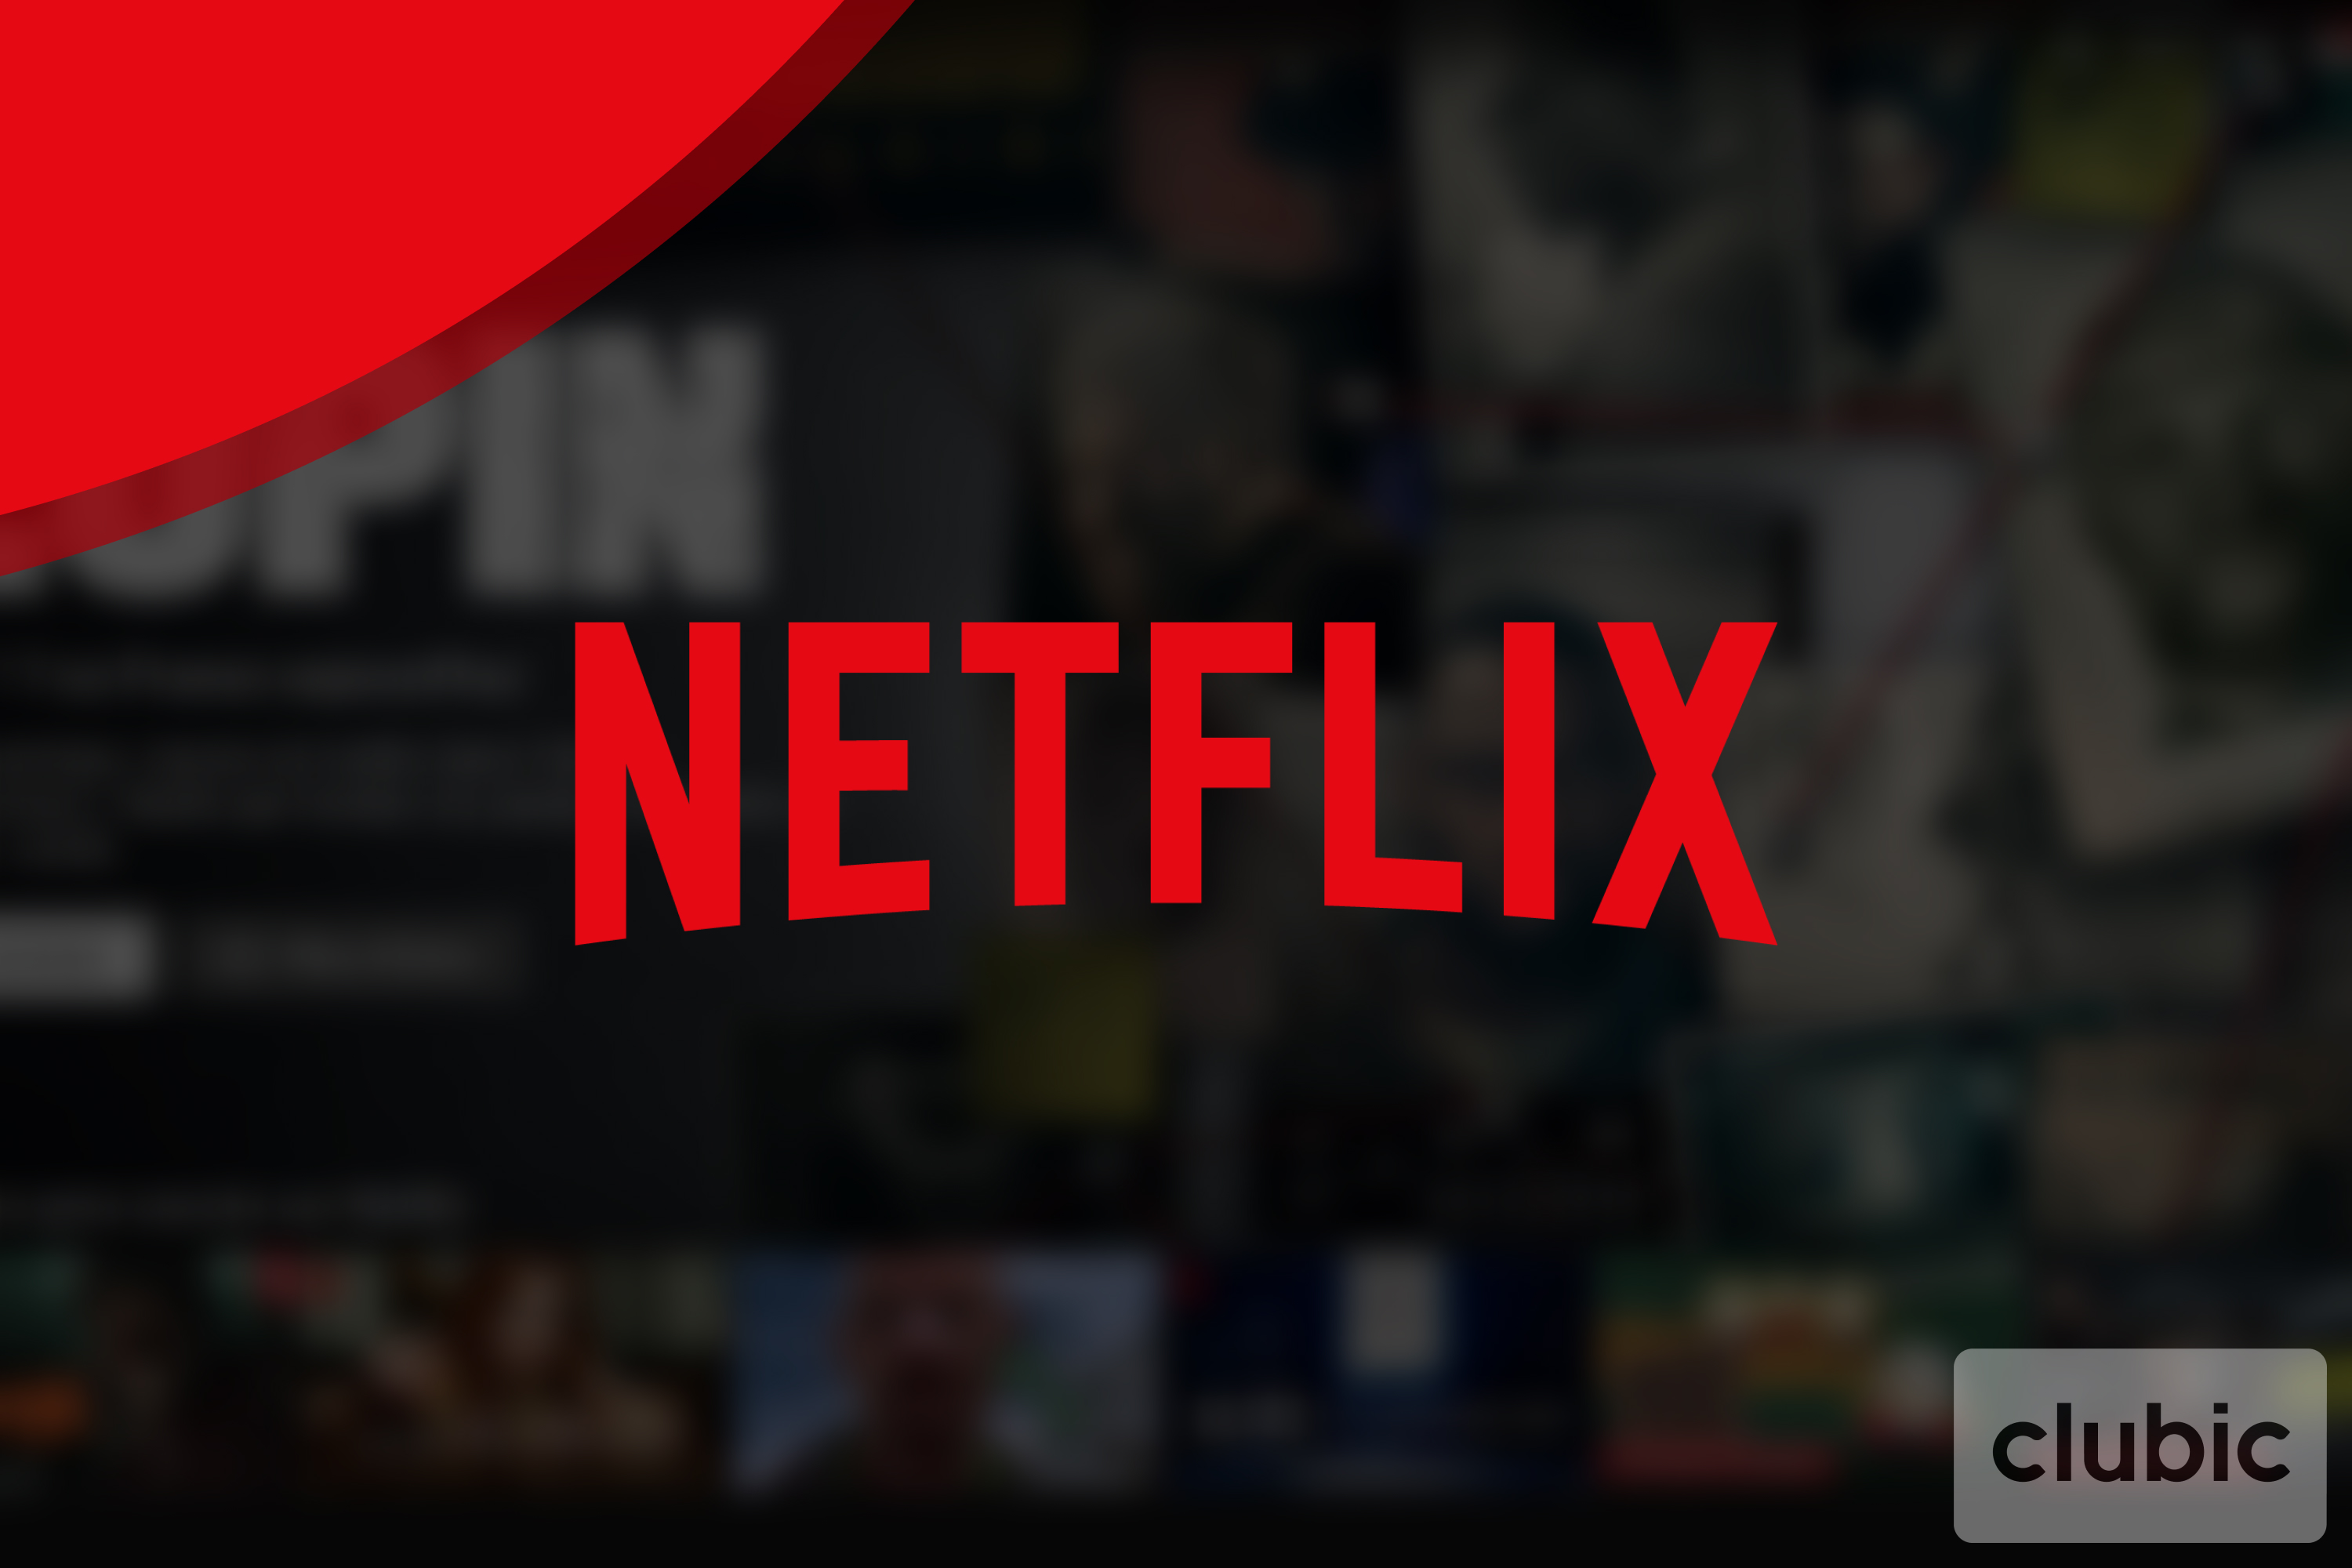 Netflix modifie ses catégories pour mettre en lumière des recommandations personnalisées